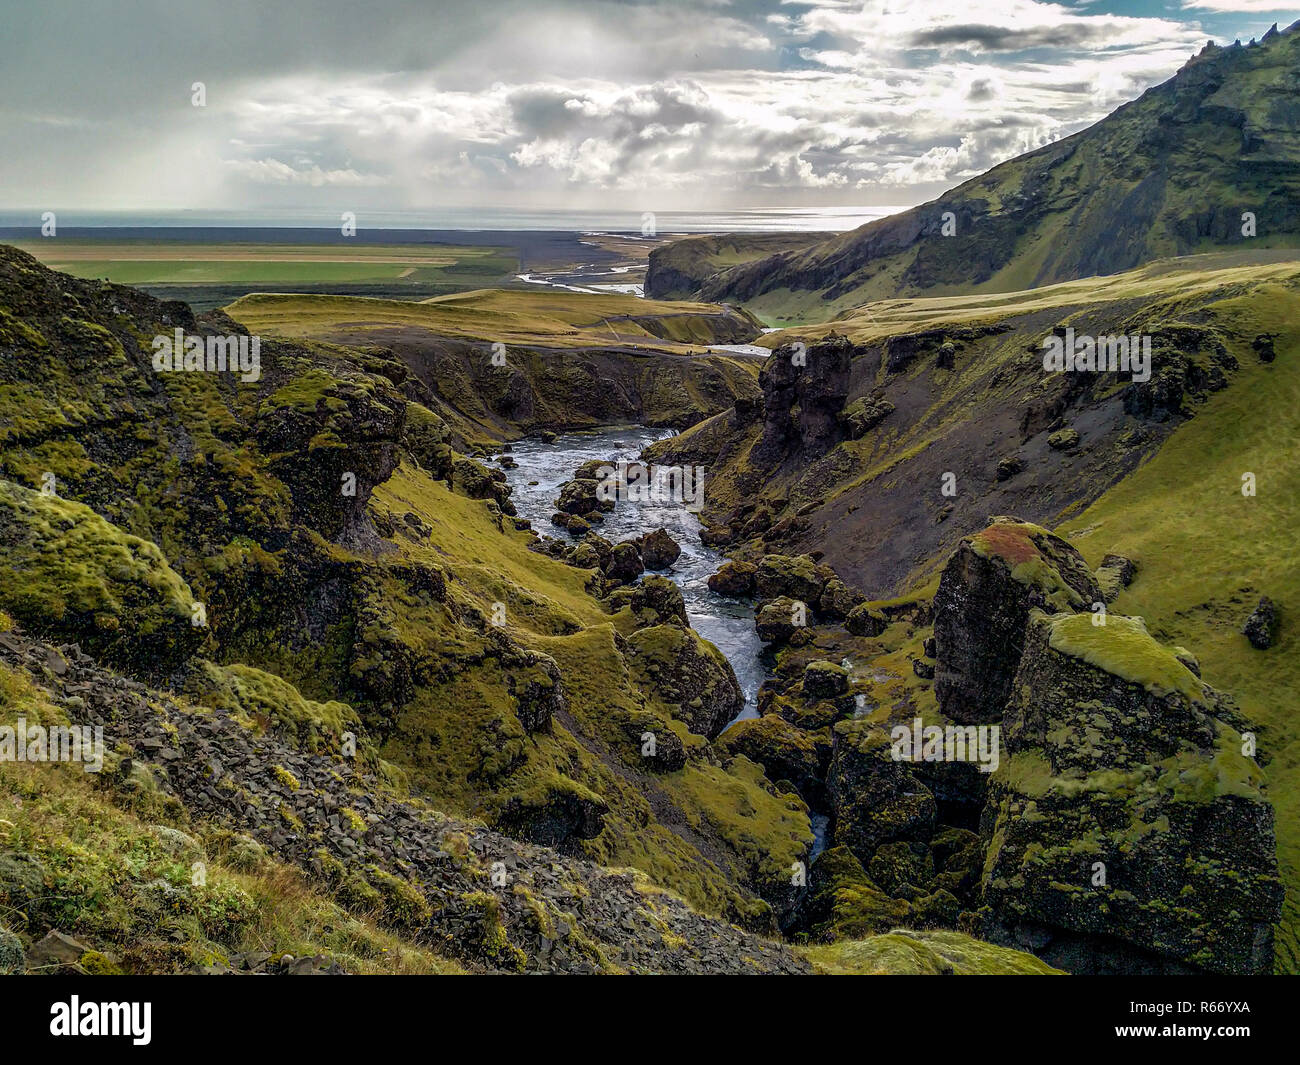 A Glaciel River runs through an Icelandic Landscape. Stock Photo